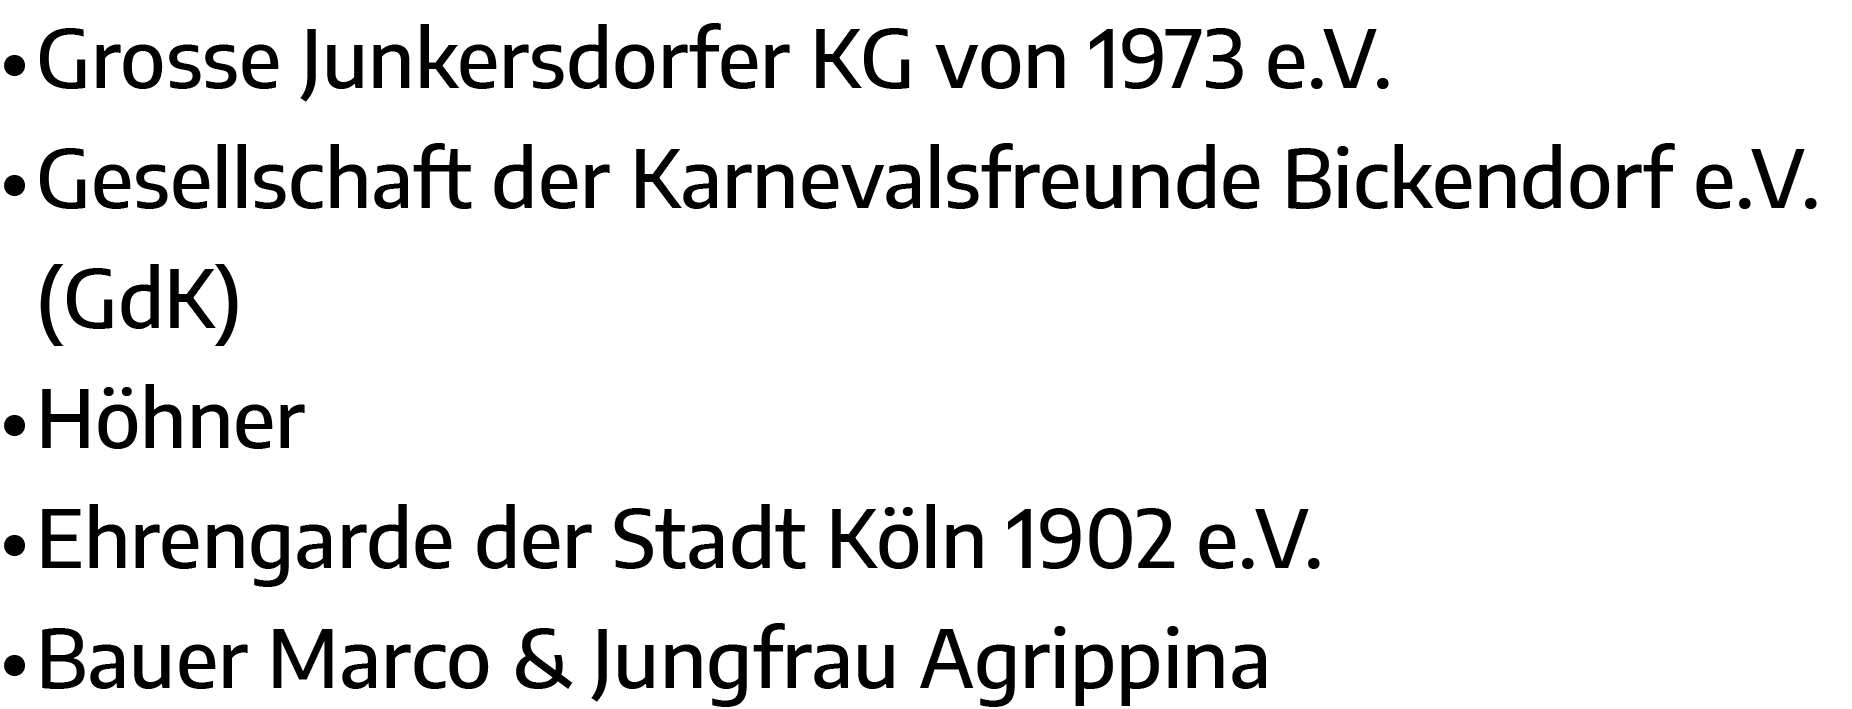   Grosse Junkersdorfer KG von 1973 e V    Gesellschaft der Karnevalsfreunde Bickendorf e V  (GdK)   Höhner   Ehrengar   